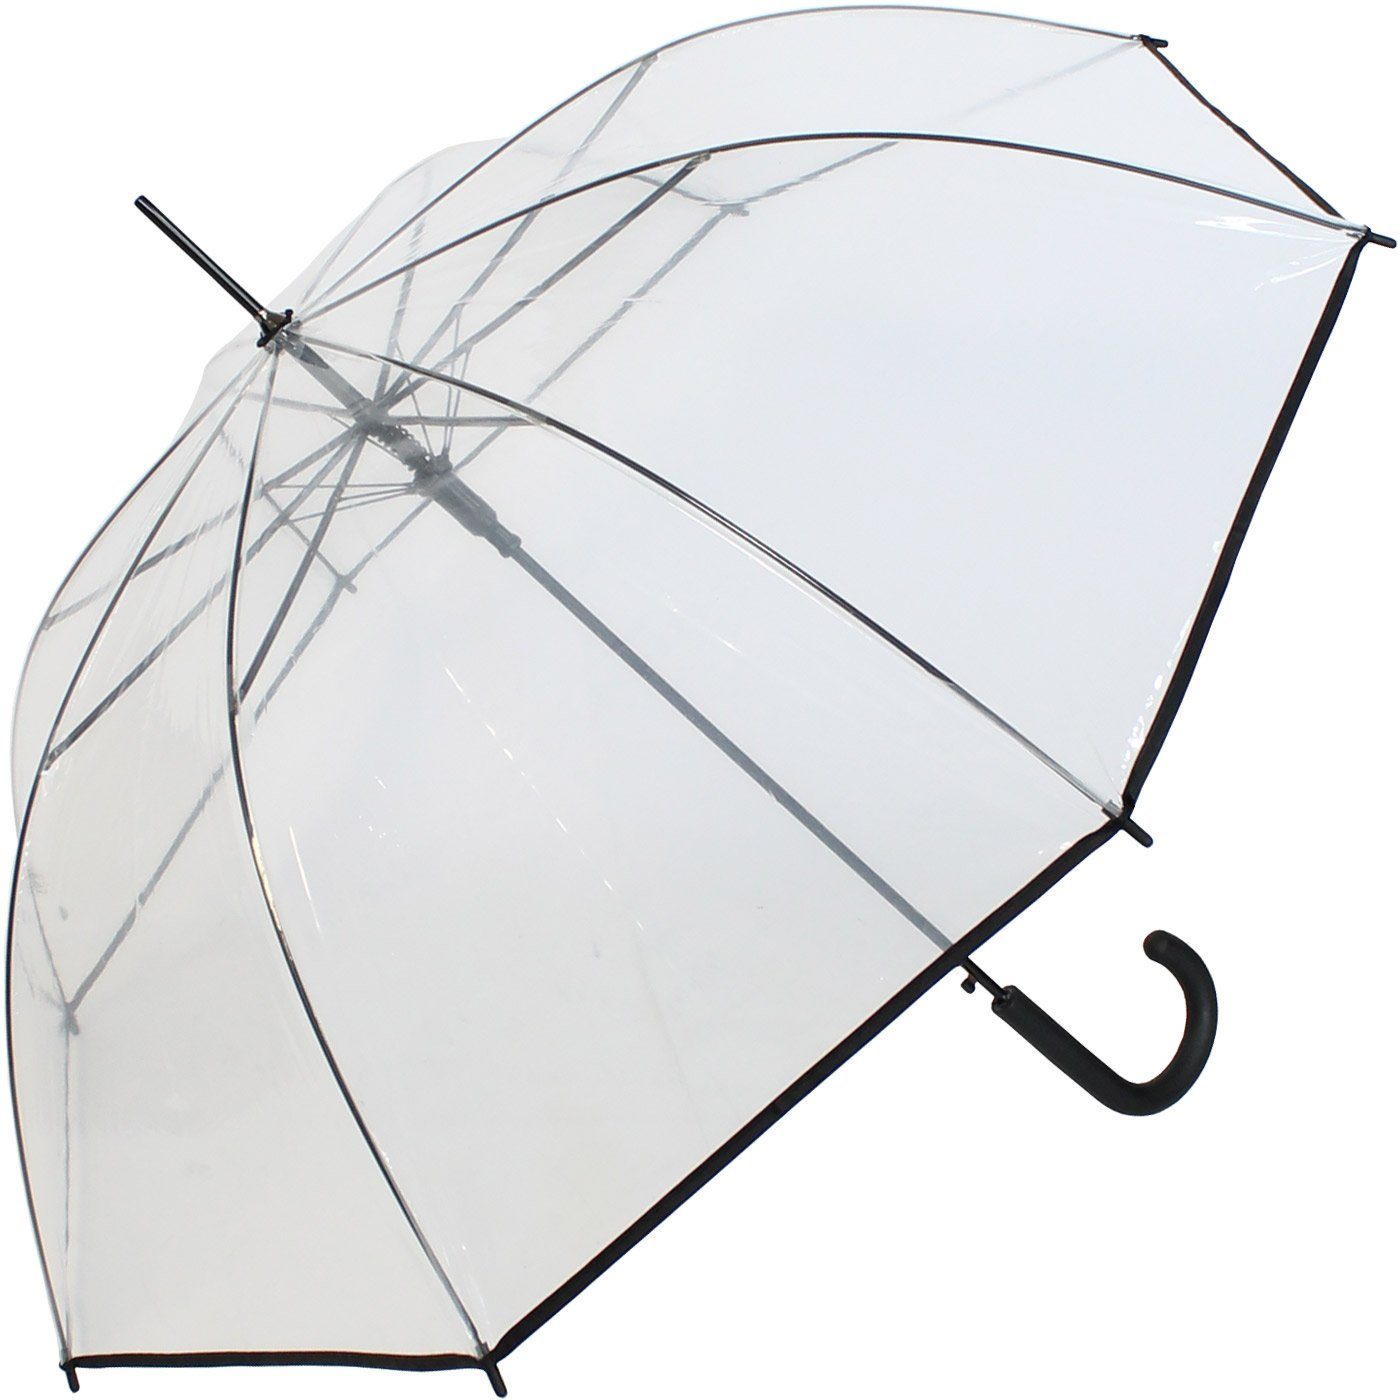 Transparentschirm durchsichtig mit durchsichtig Einfassband, HAPPY RAIN Langregenschirm